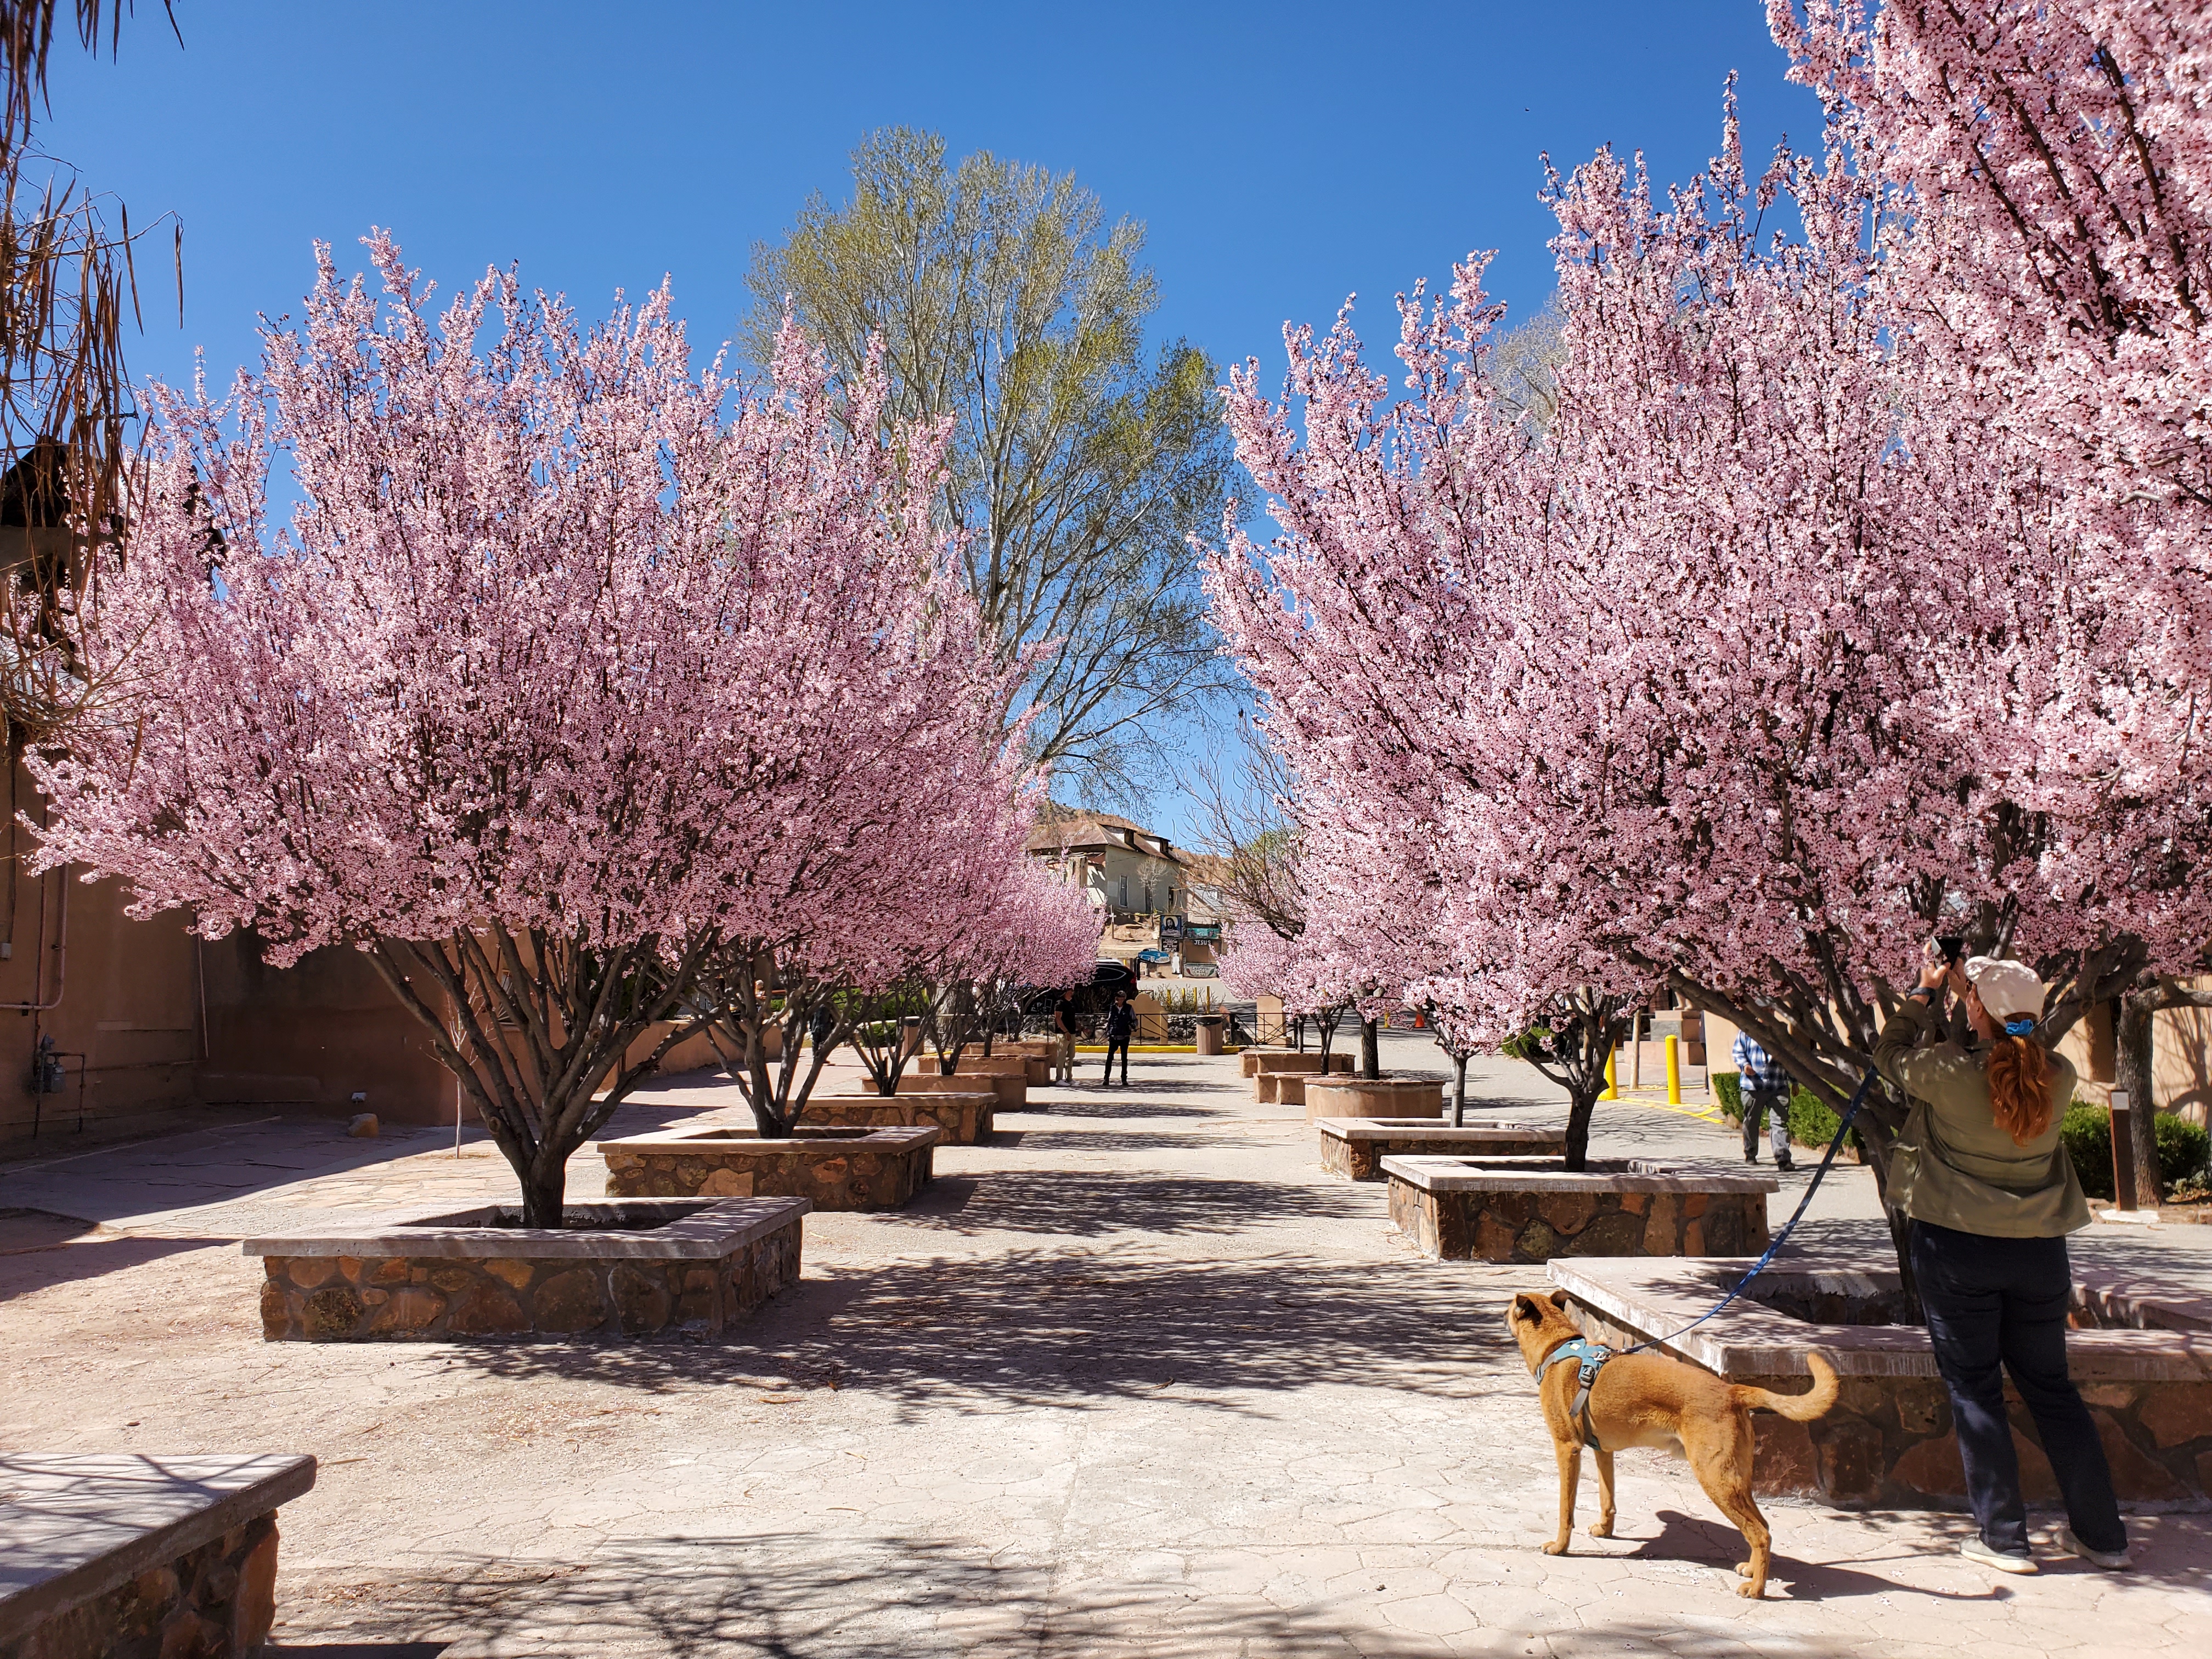 El Santuario de Chimayo cherry blossoms